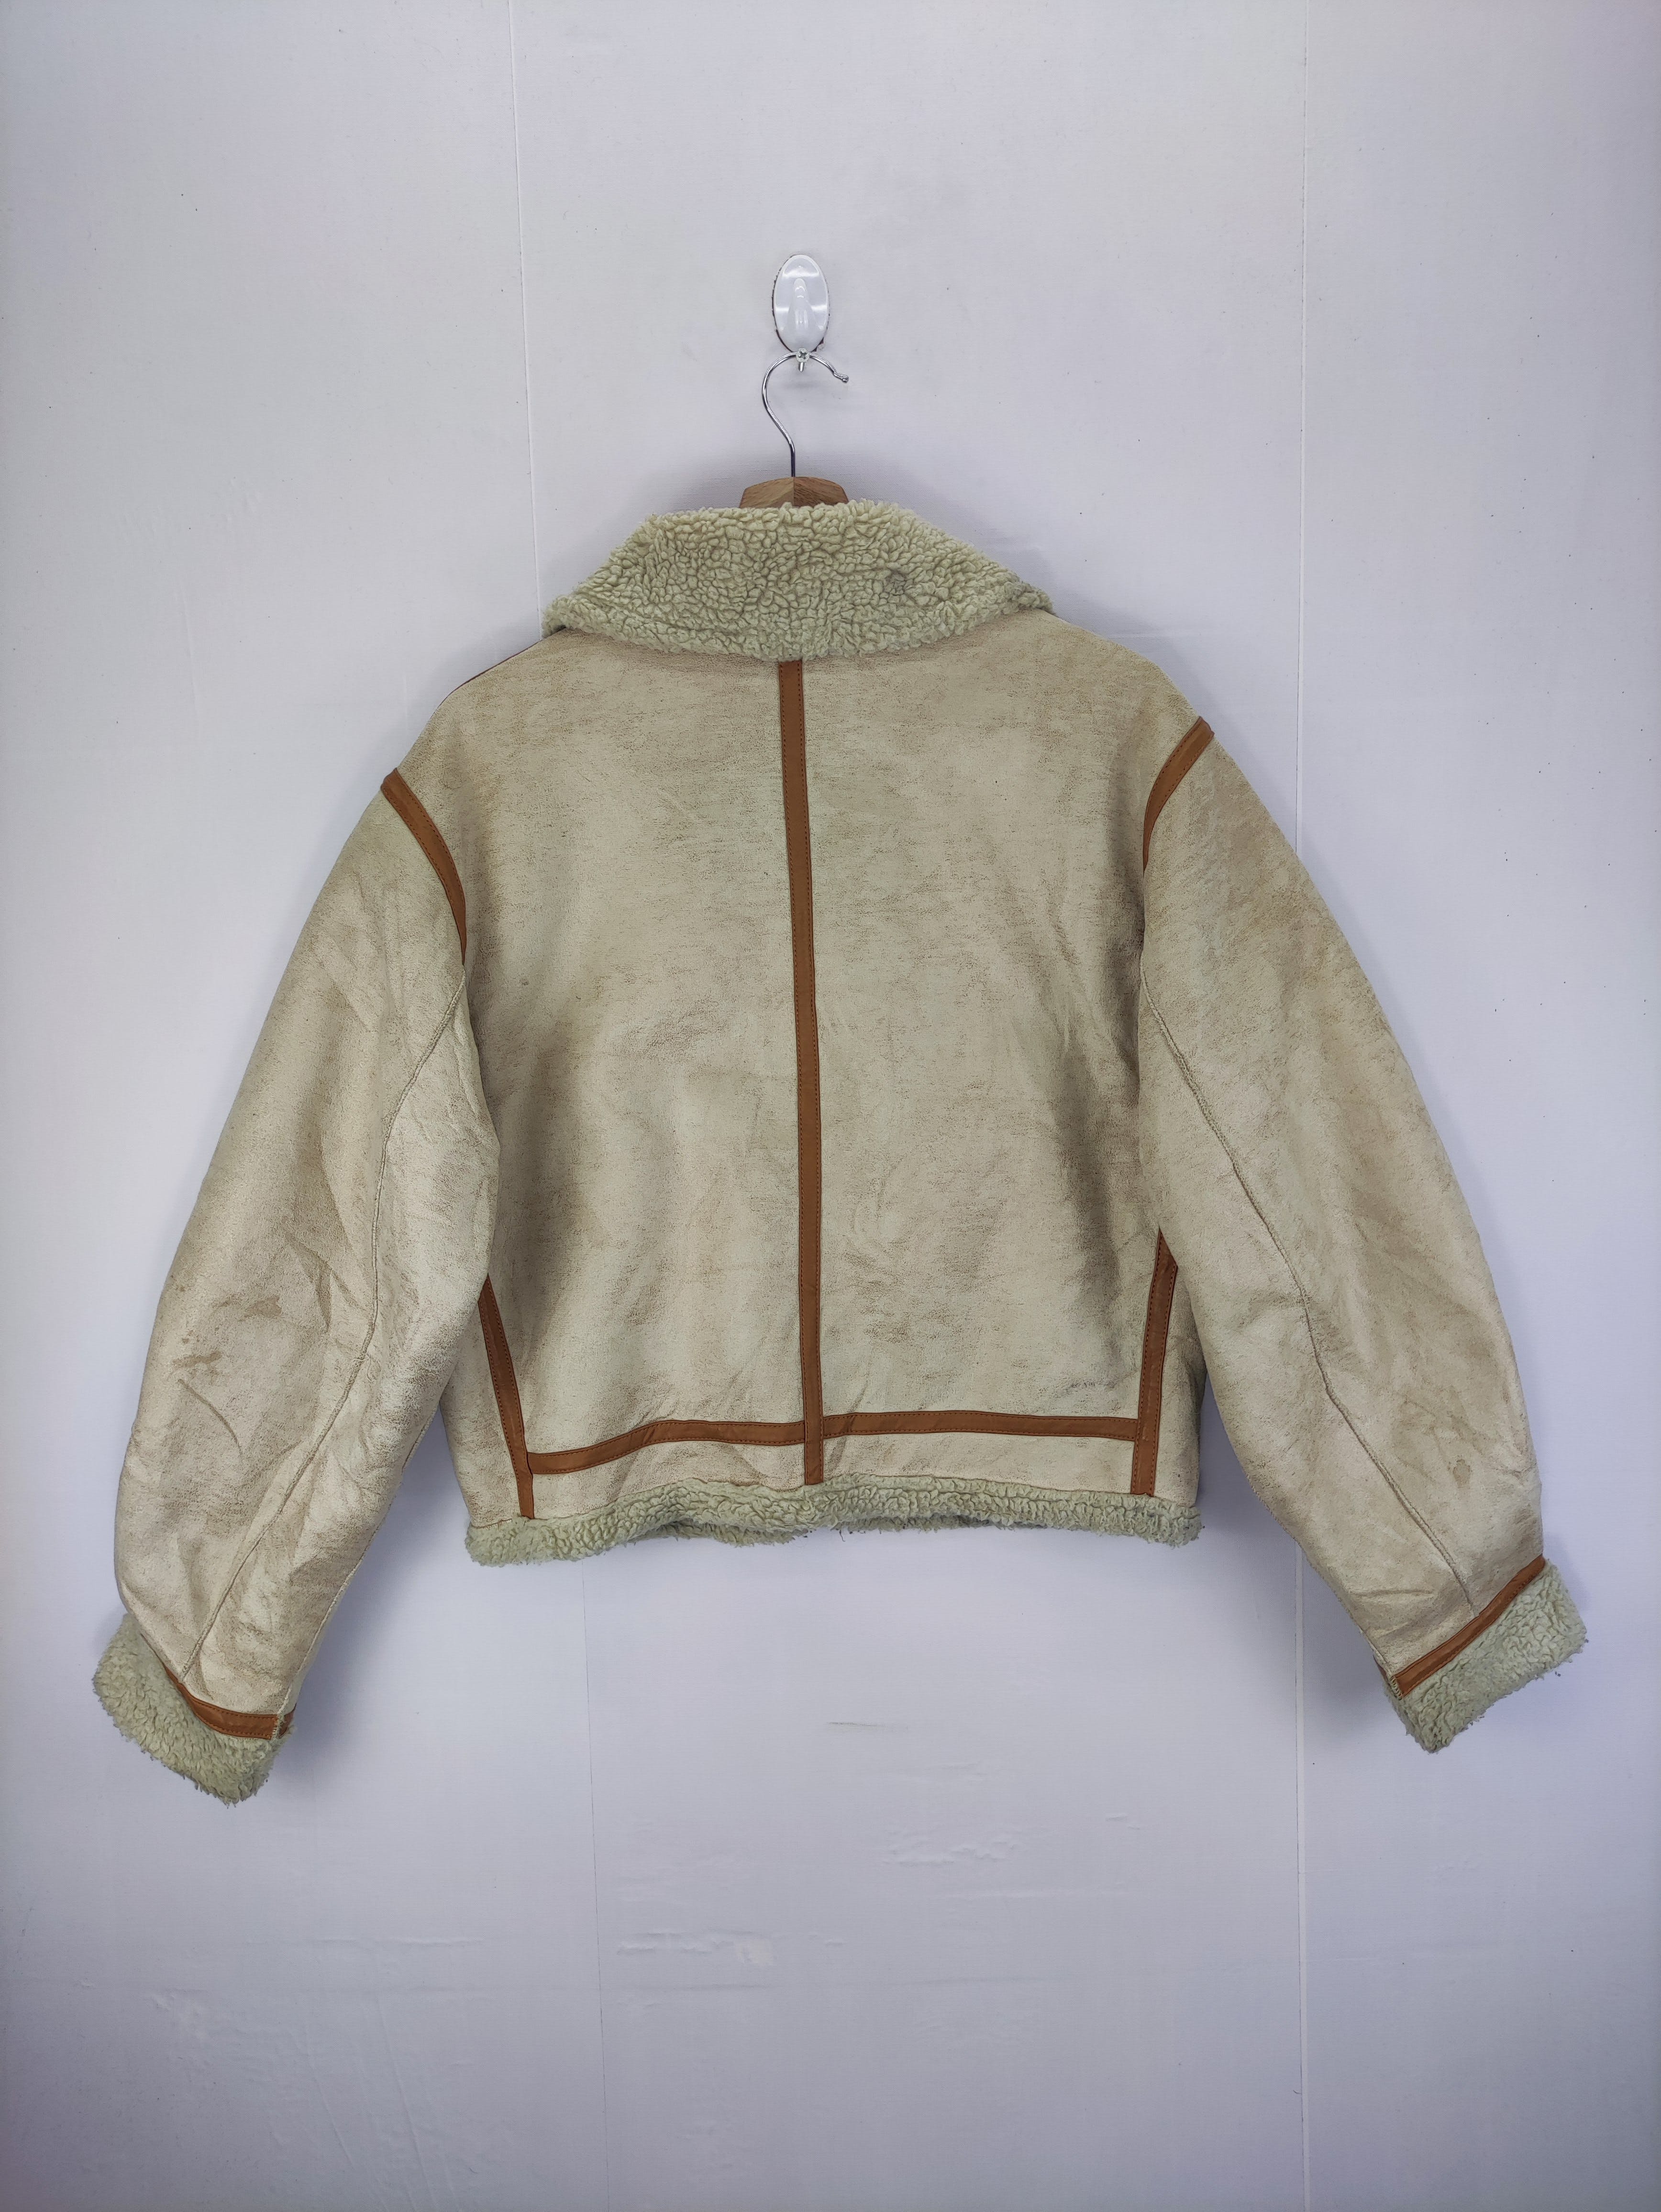 Vintage Sly Moleskin Jacket Lining Sherpa Zipper - 13